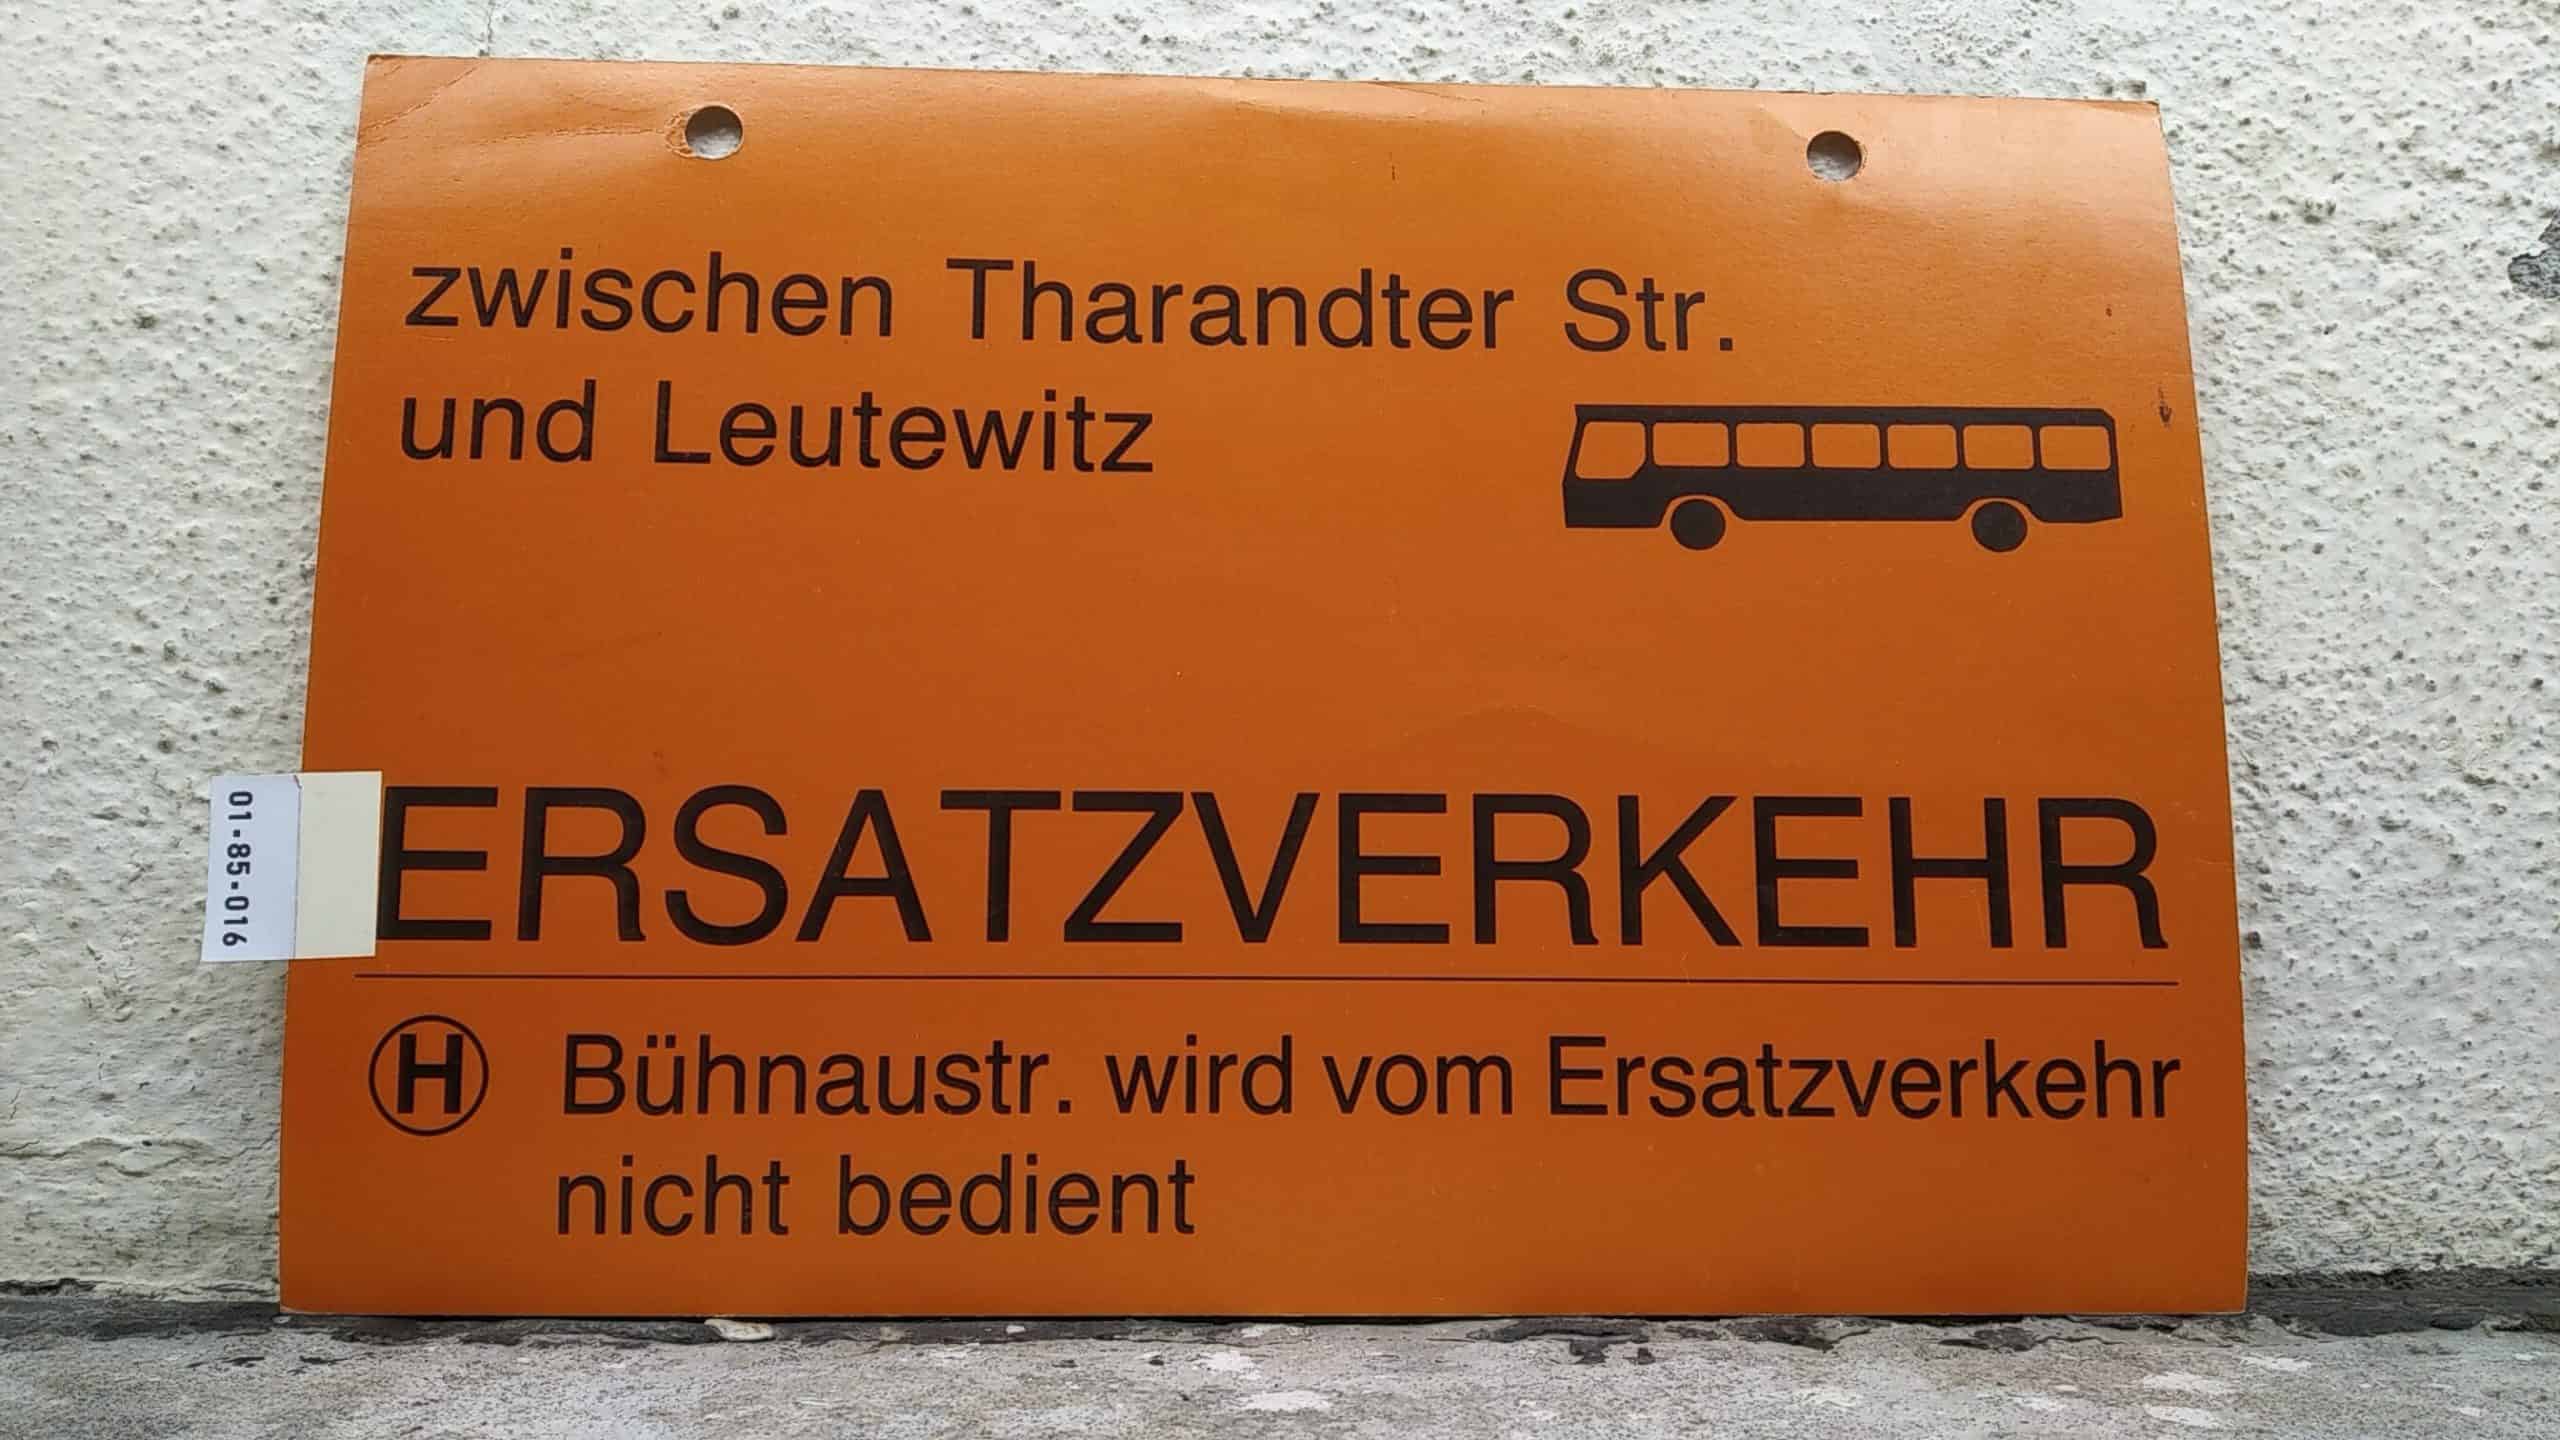 Ein seltenes Straßenbahn-Umleitungsschild aus Dresden: zwischen Tharandter Str. und Leutewitz [Bus neu] ERSATZVERKEHR [Hst.] Bühnaustr. wird vom Ersatzverkehr nicht bedient